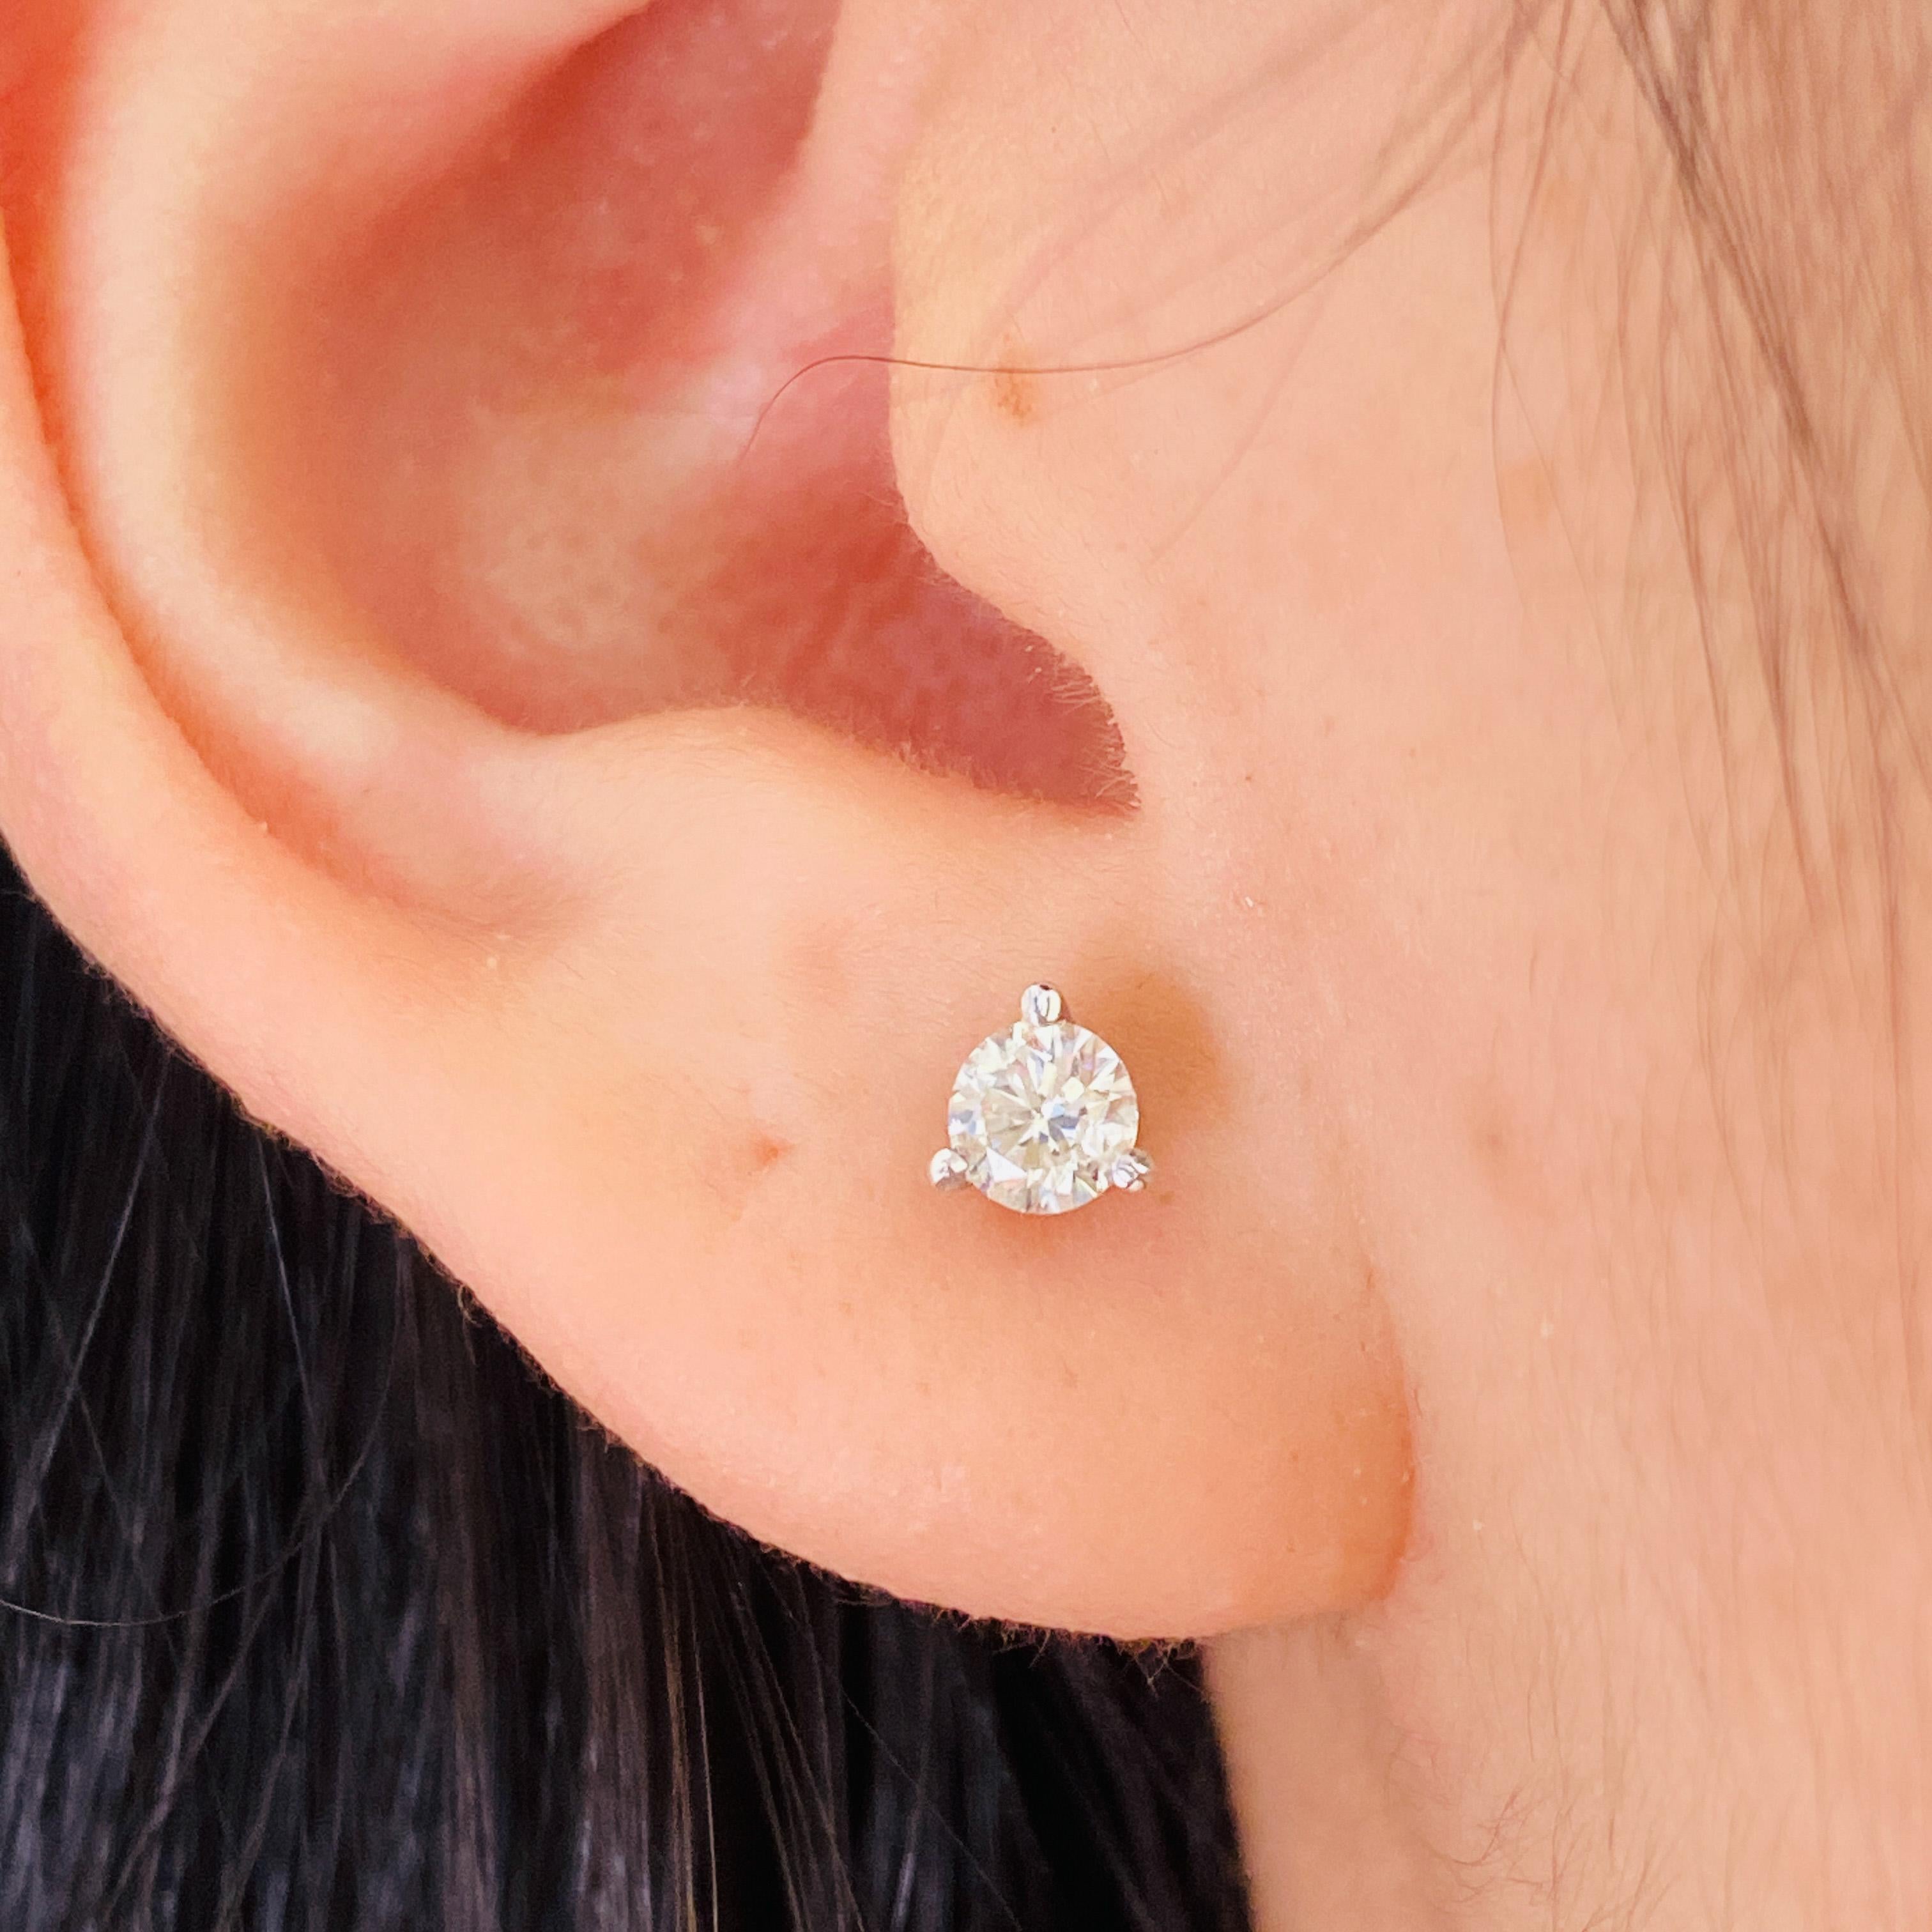 Diese fabelhaften Diamant-Ohrstecker sind perfekt für jedes Ohr. Sie sehen wunderschön aus, egal ob Sie sie allein oder als Akzent neben anderen Lieblingsohrringen tragen! Martini Ohrstecker sind beliebt, weil sie ein niedriges Profil nahe am Ohr